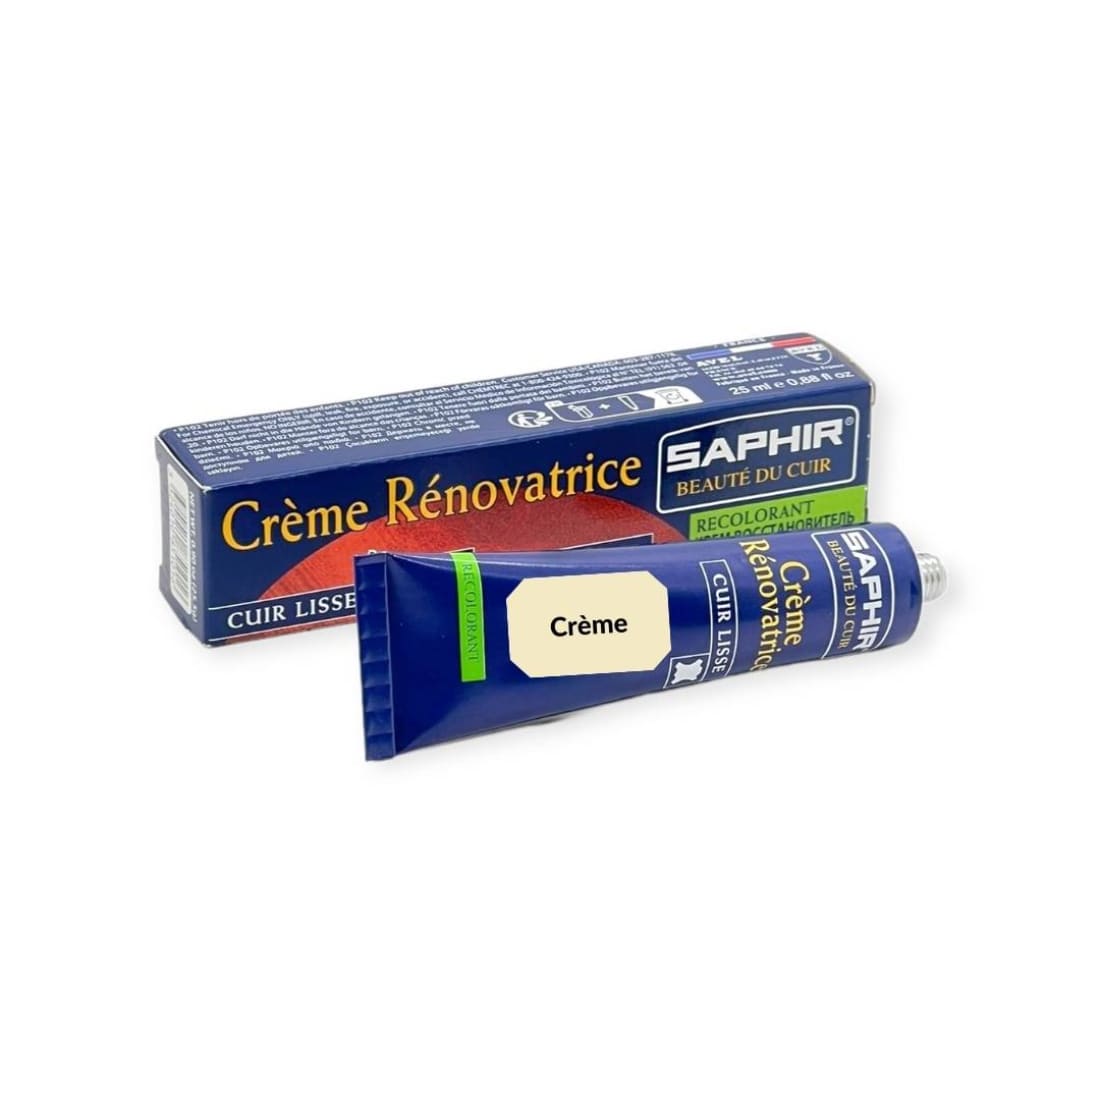 Crème Rénovatrice Crème - Saphir - 25 ml - Accessoires